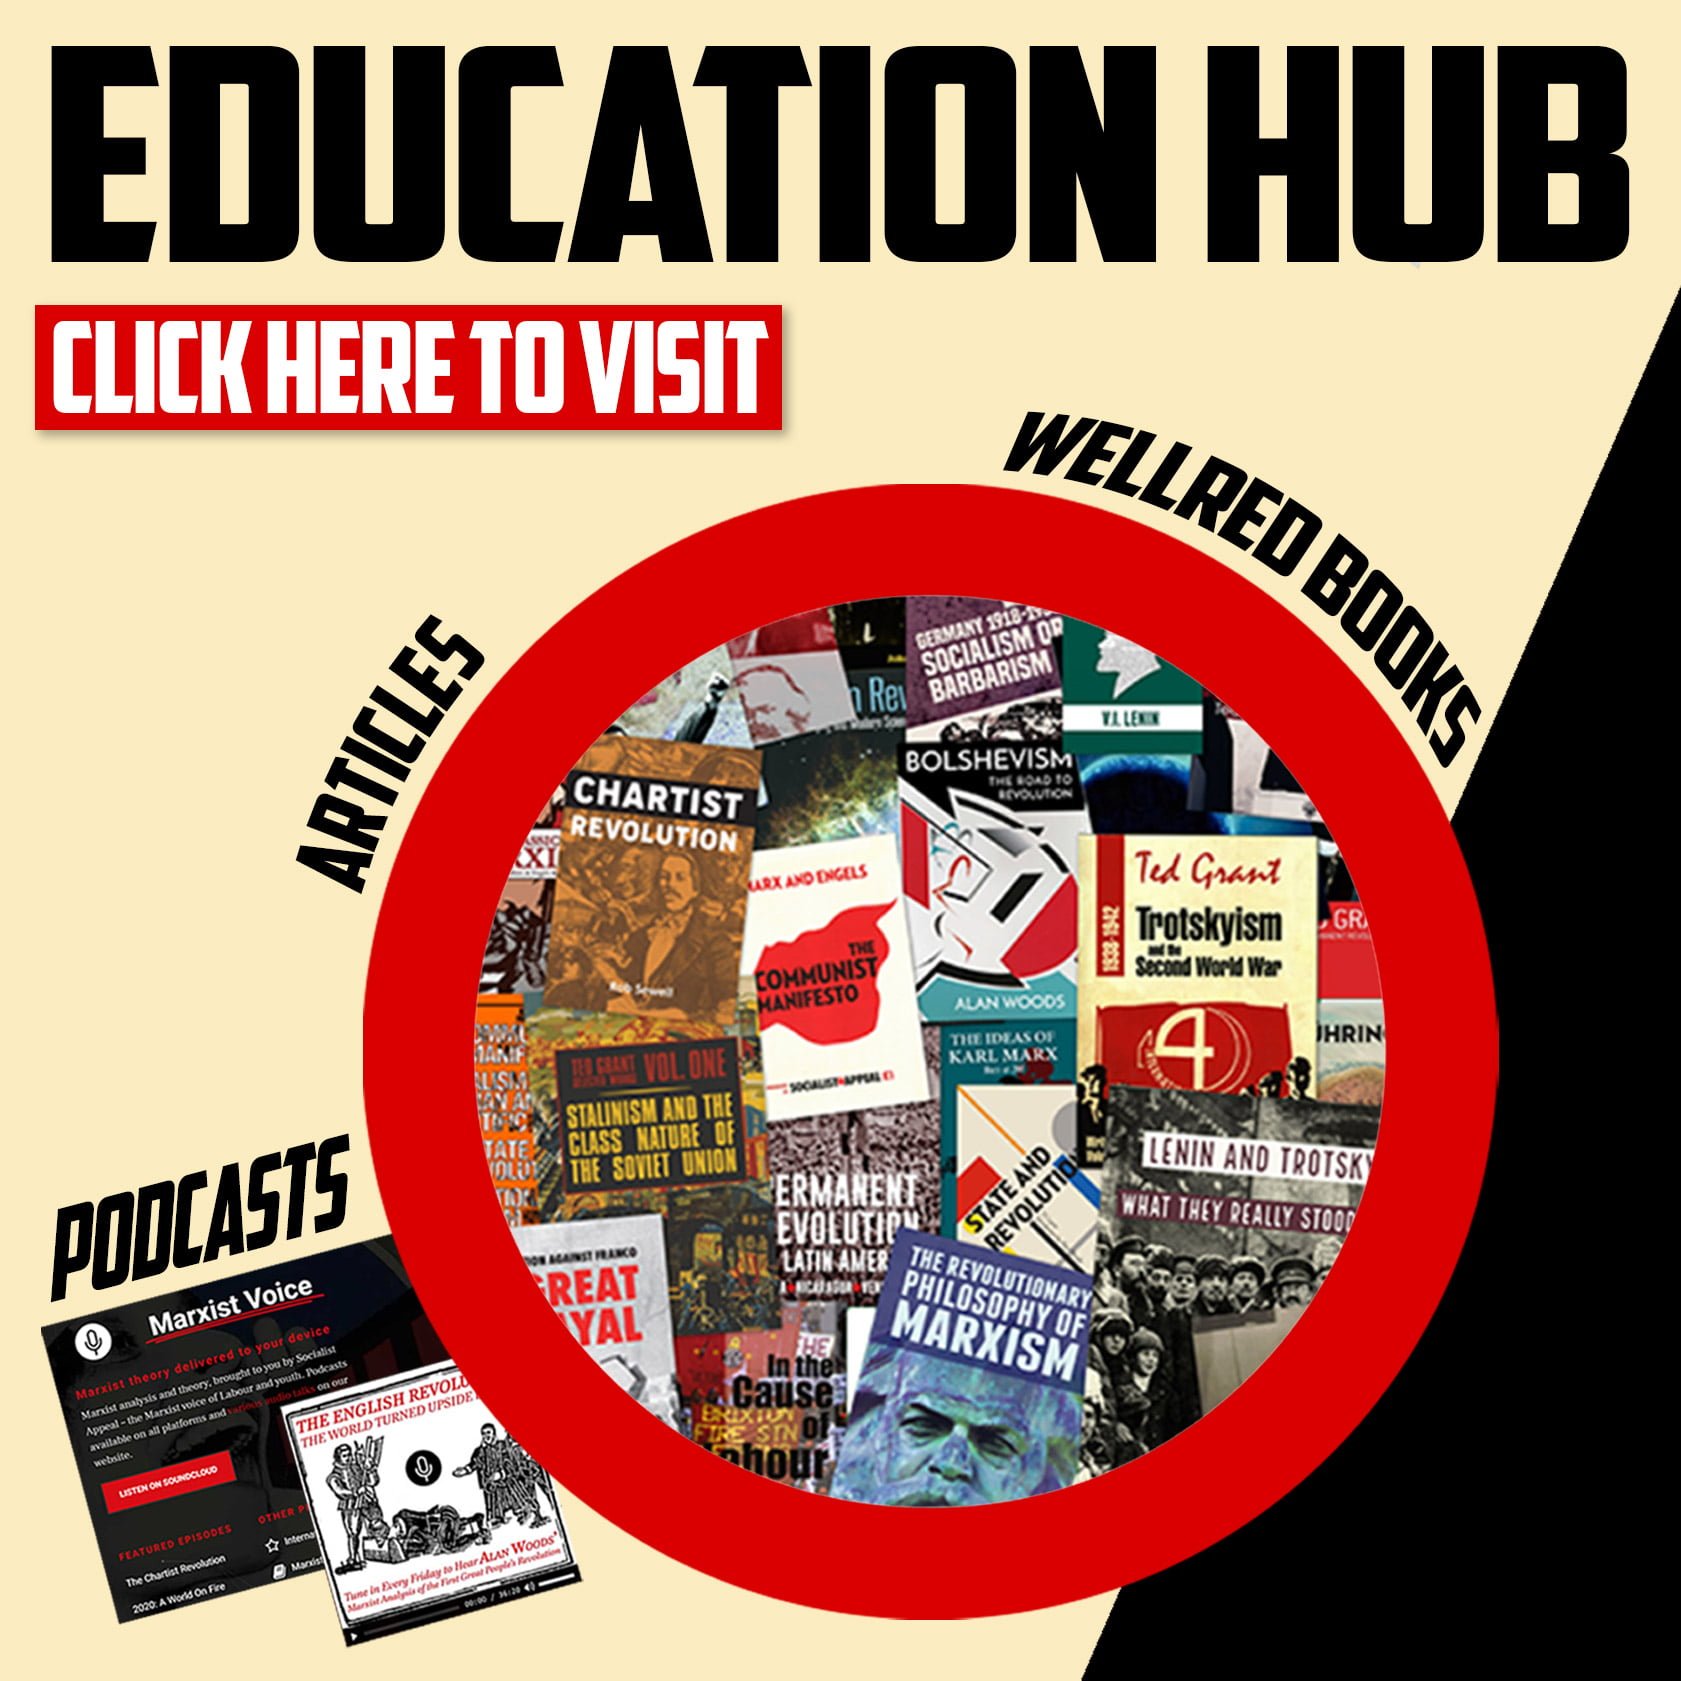 Education hub